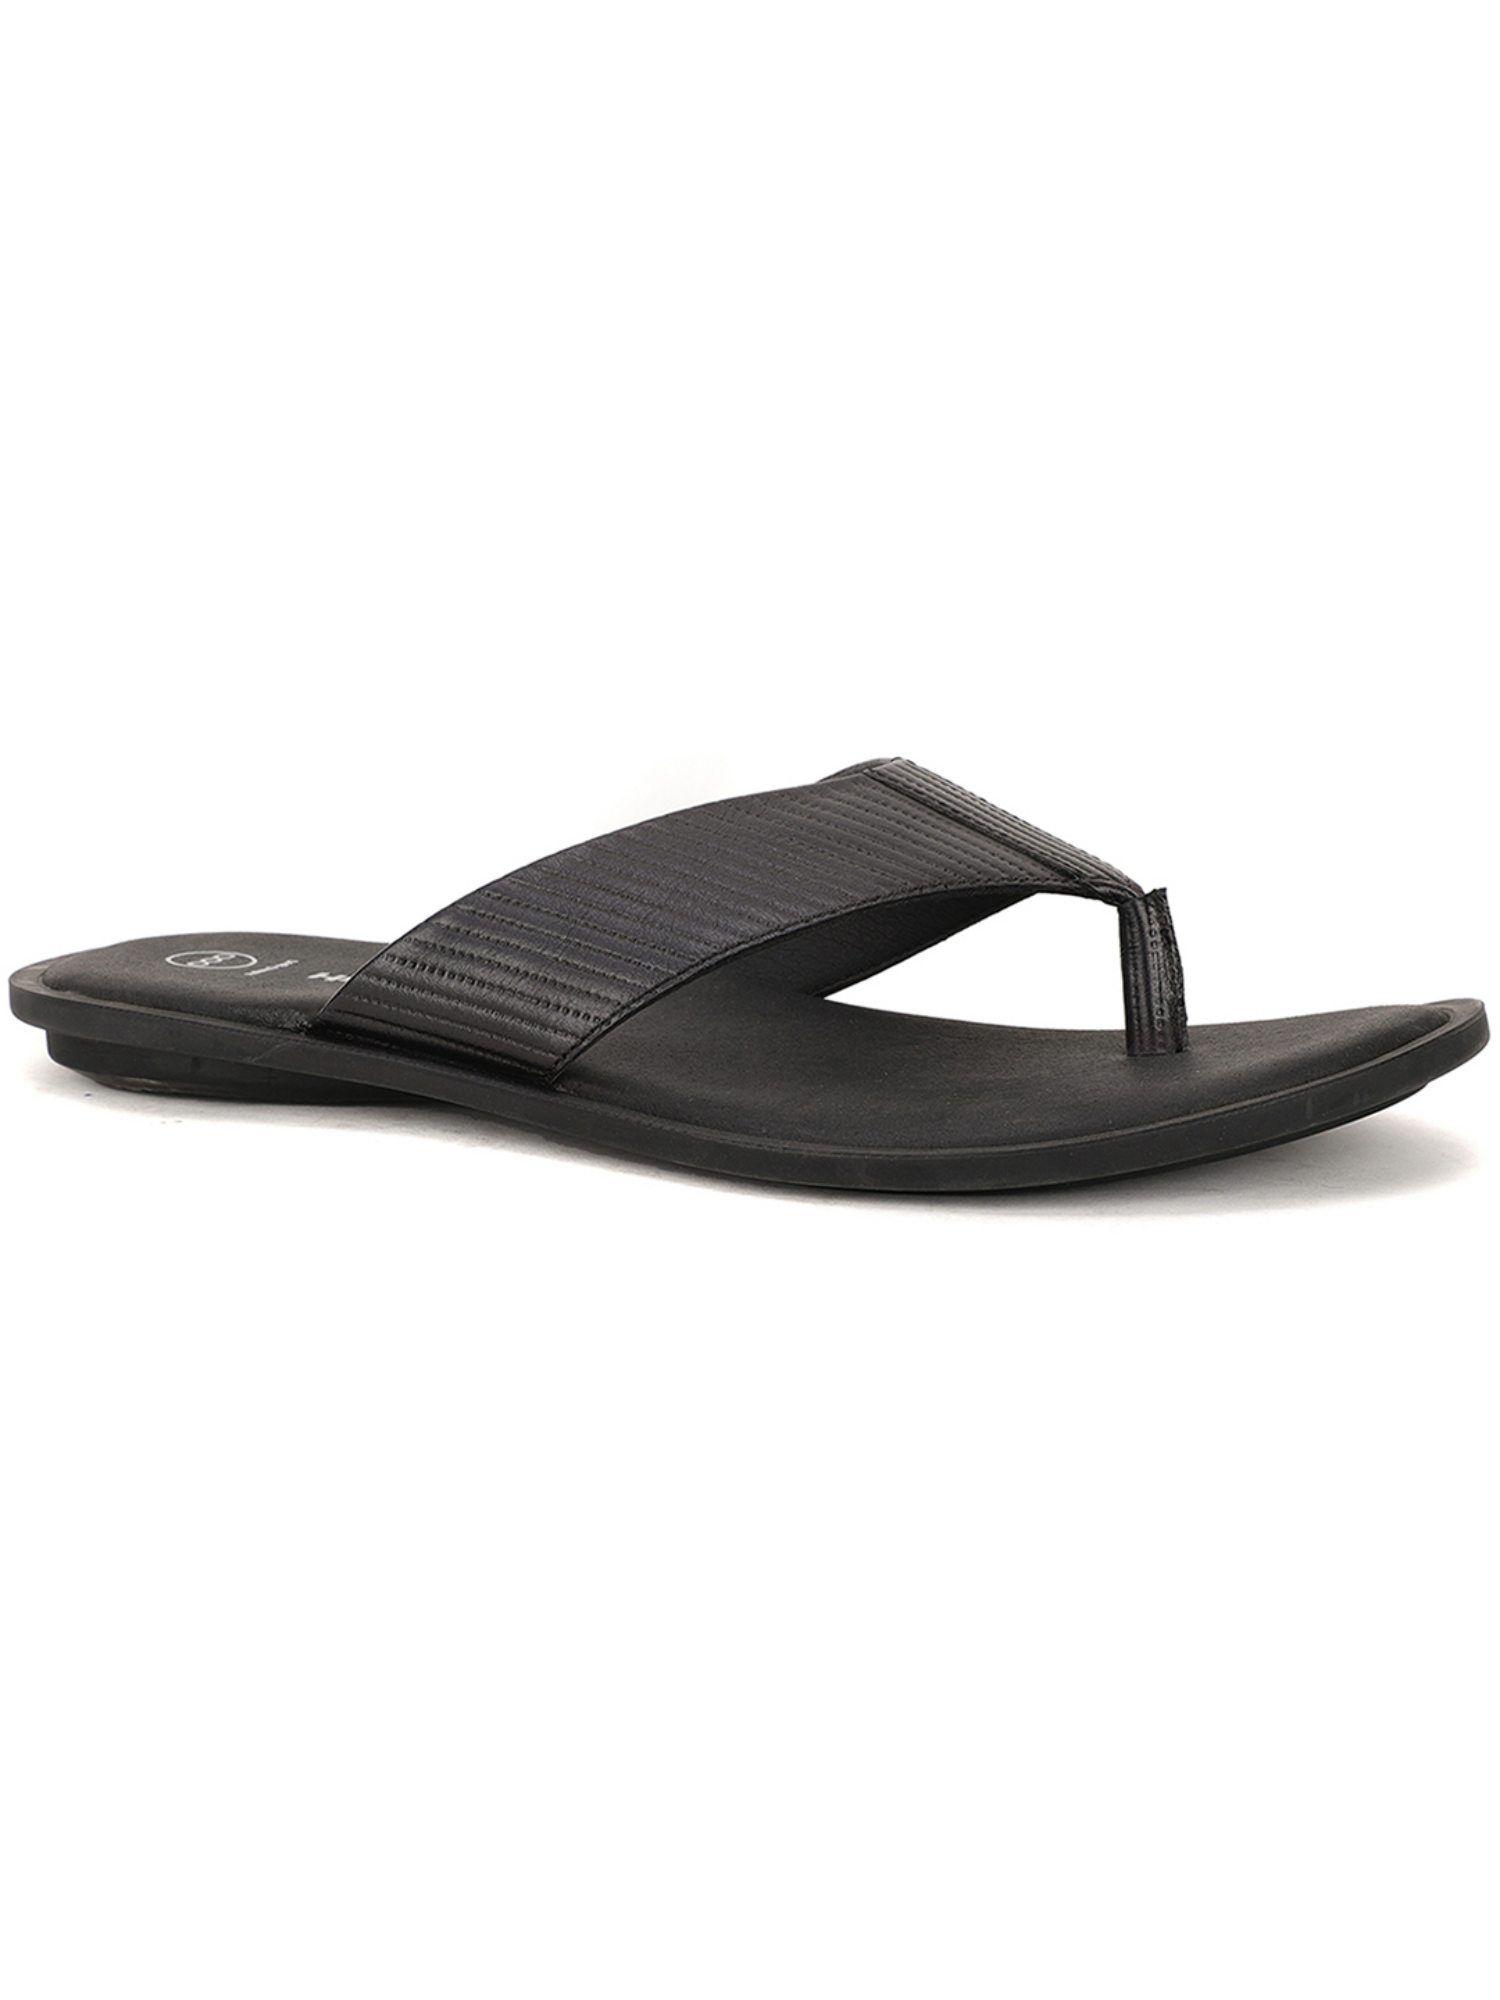 textured black sandals